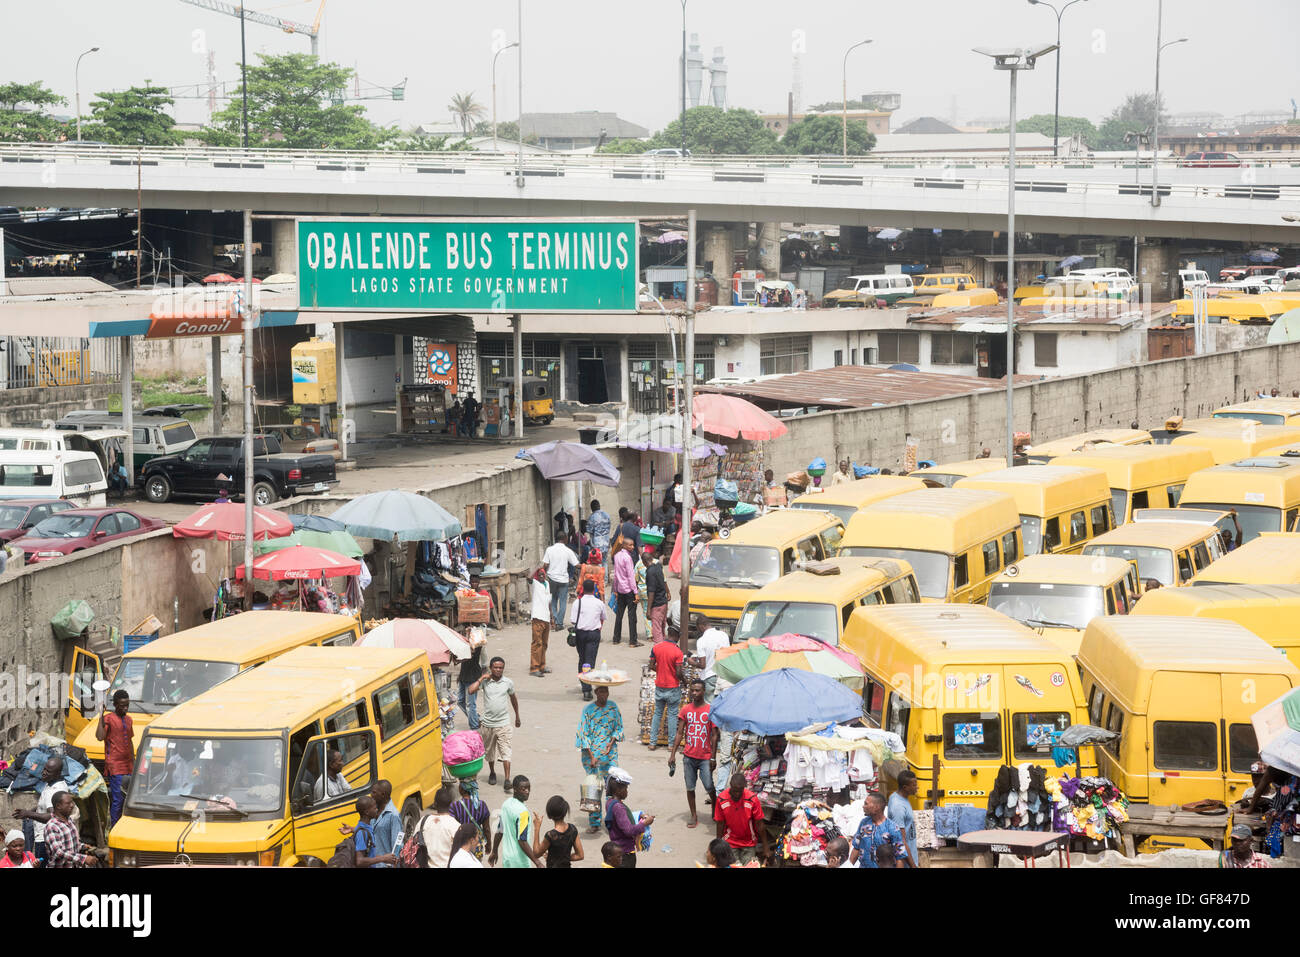 Danfo al terminal degli autobus di Obalende, Lagos Island, Nigeria Foto Stock